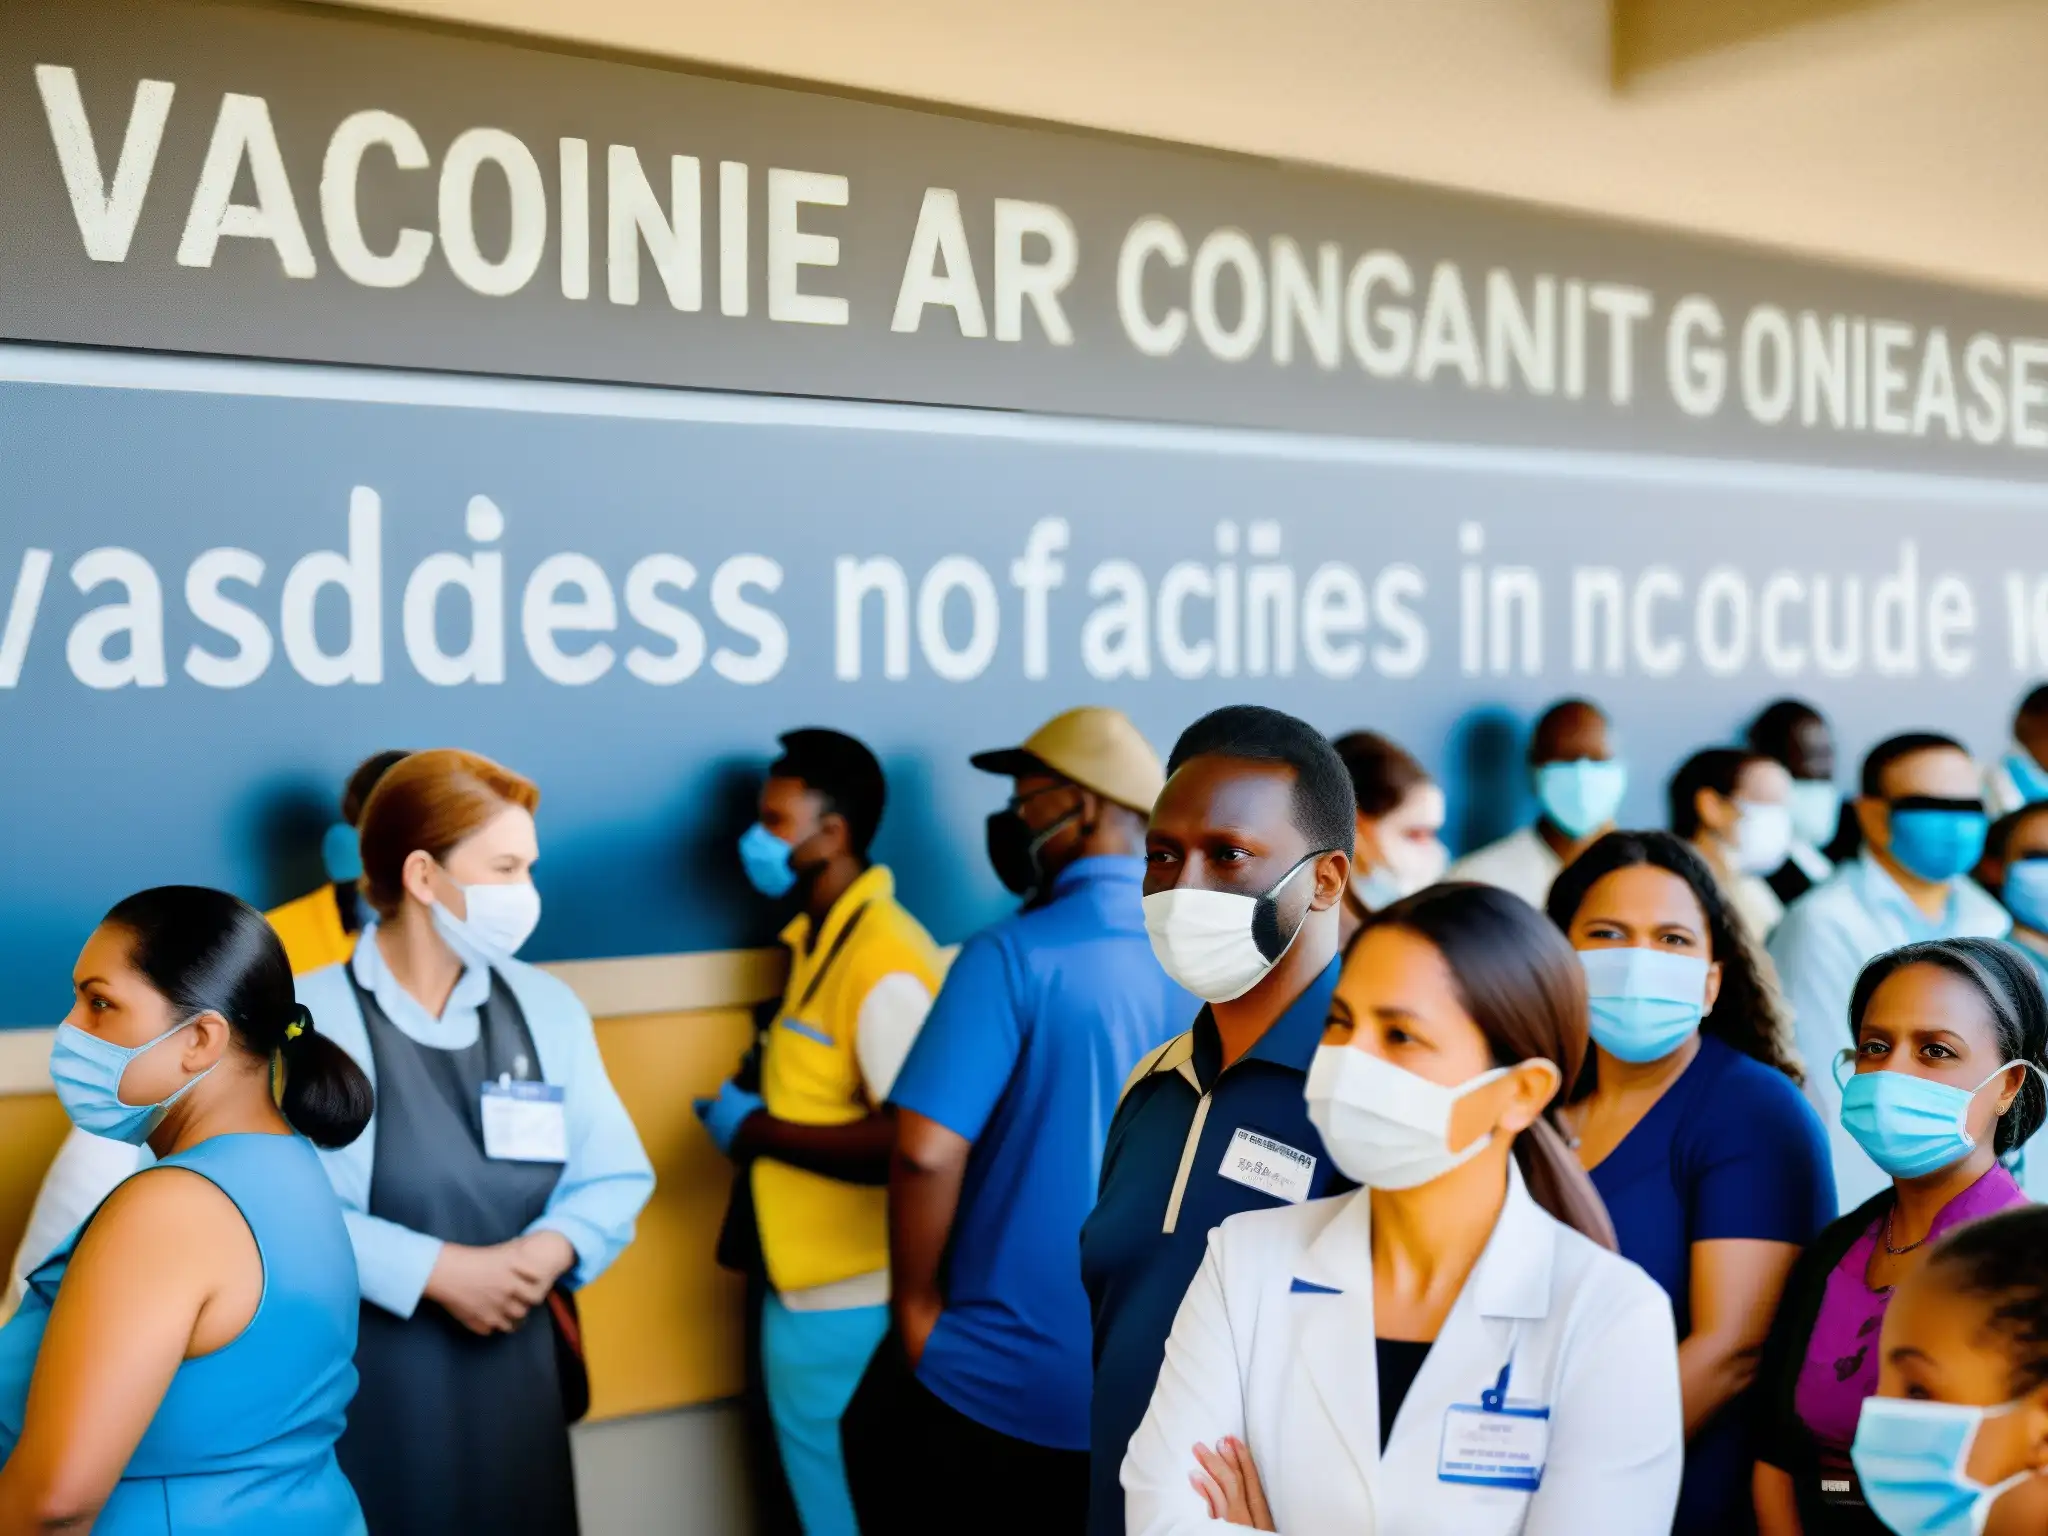 Imagen impactante de un centro de vacunación abarrotado con personas de diversas edades y orígenes étnicos esperando para recibir sus vacunas